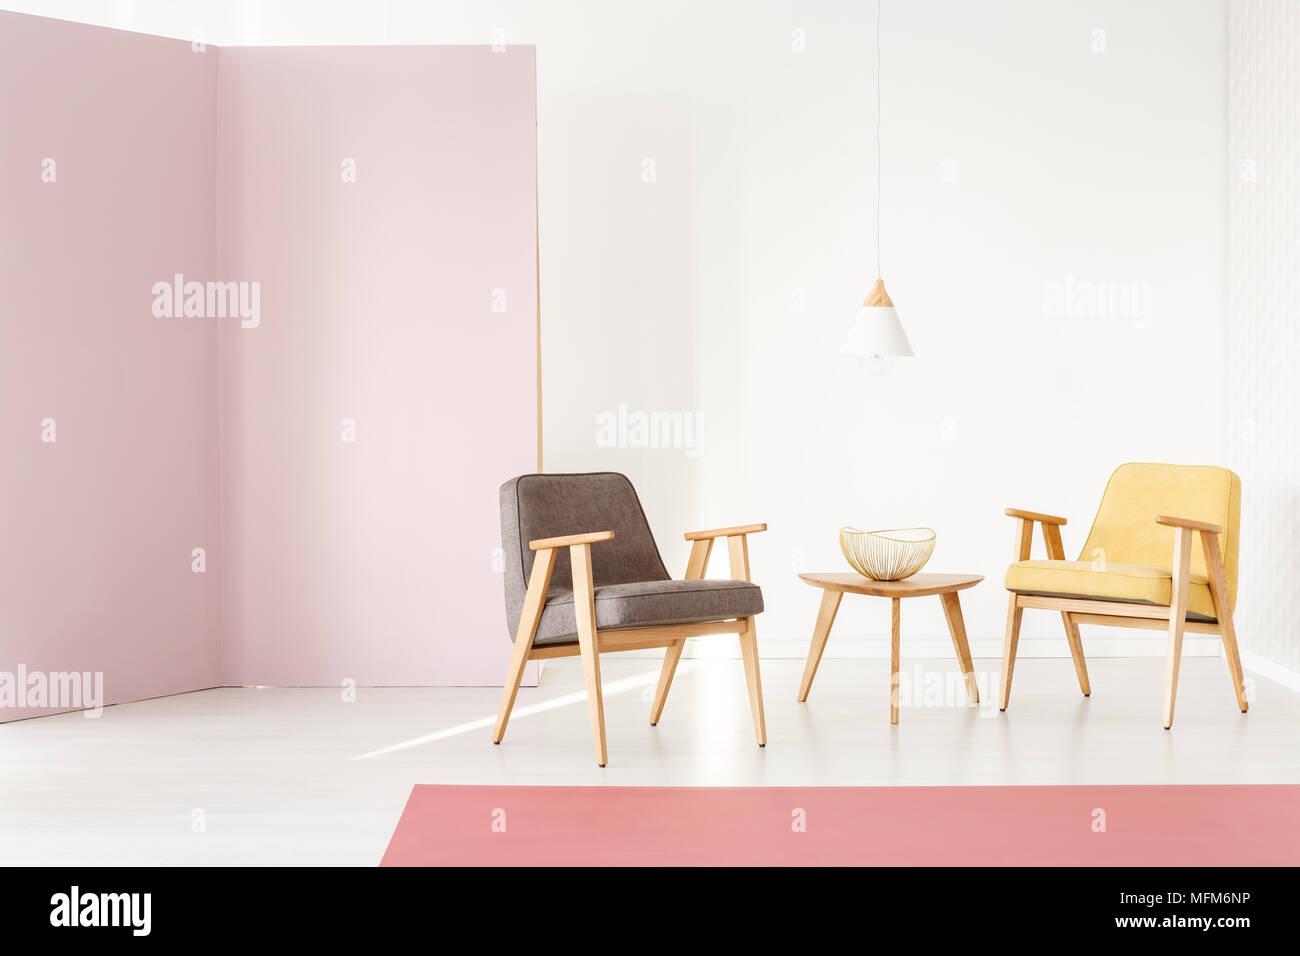 Raggi di sole che splende su una moderna, poltroncina in legno in un elegante colore rosa pastello interno con pareti bianche - disposizione dei mobili per una brochure Foto Stock